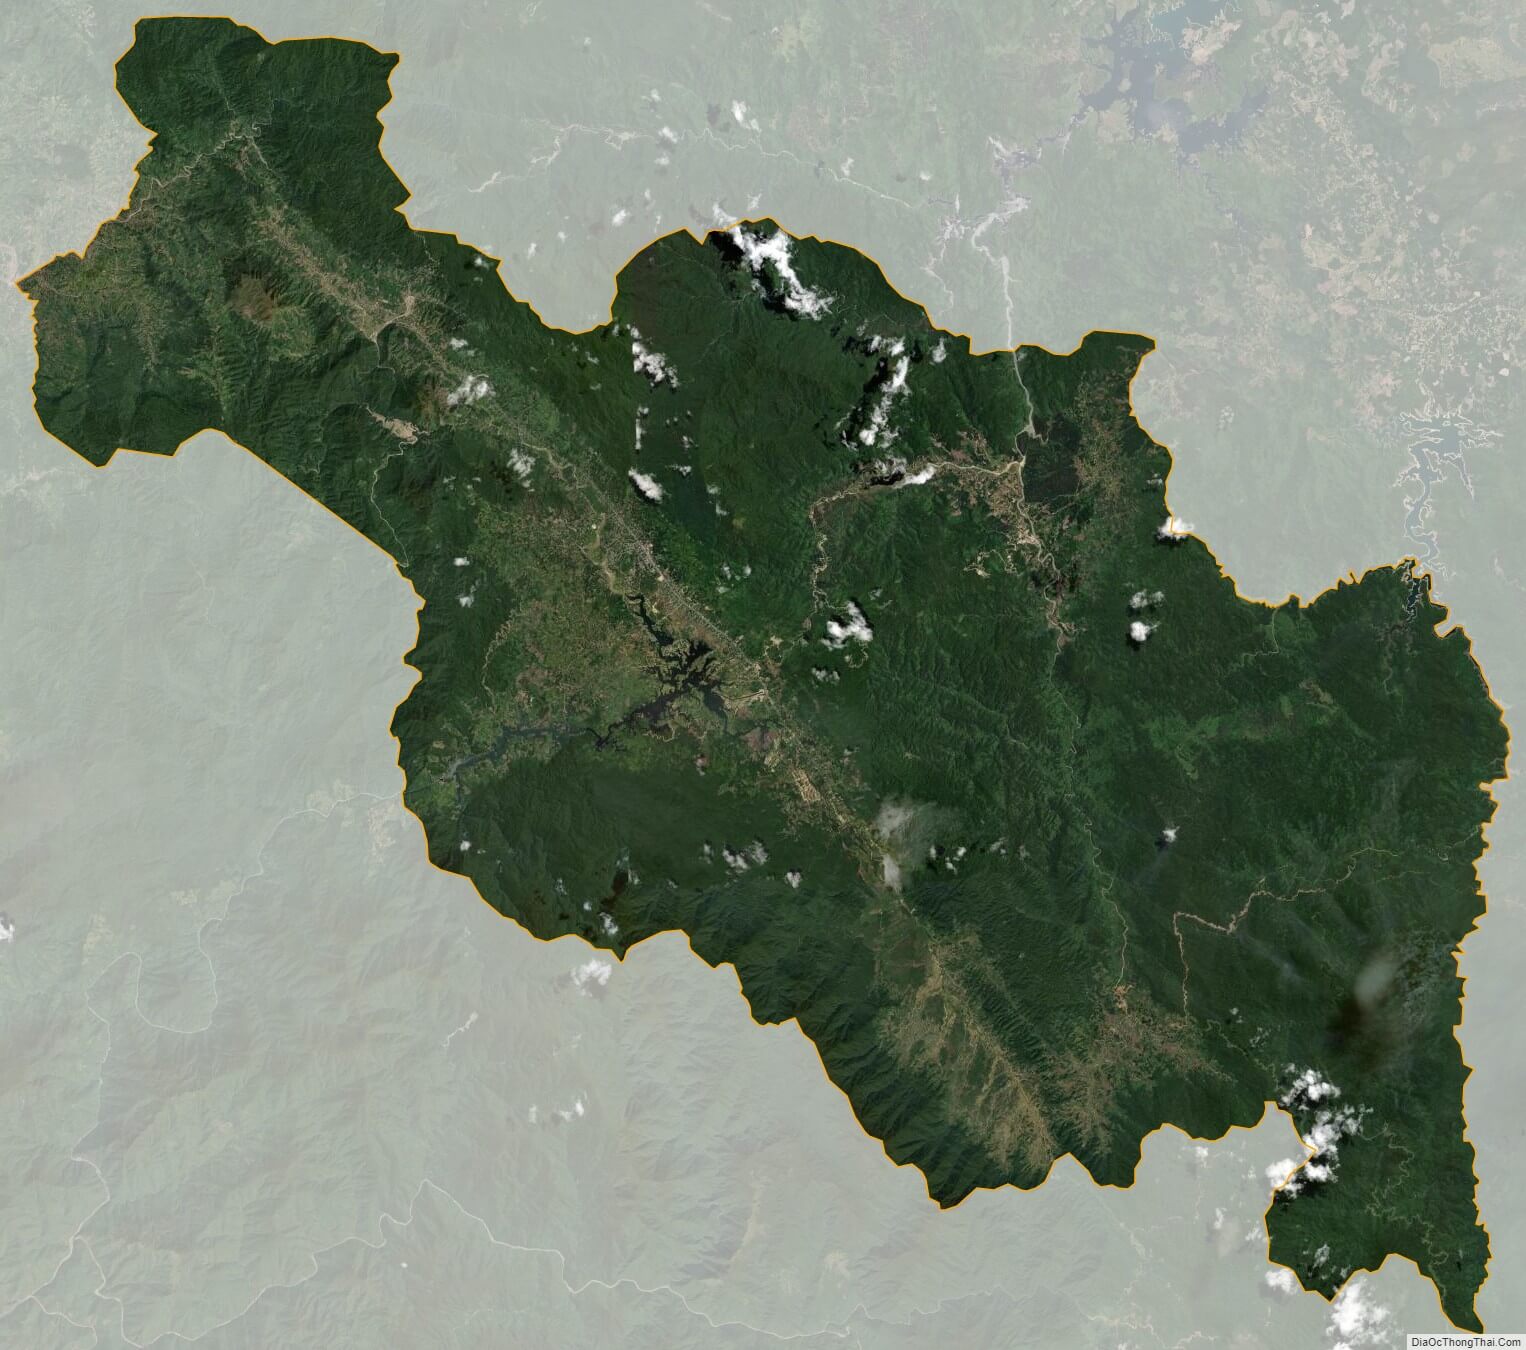 Bạn đã sẵn sàng để khám phá huyện A Lưới của Thừa Thiên - Huế chưa? Tìm hiểu bản đồ chi tiết nhất của huyện này để bạn có thể dễ dàng di chuyển và tìm hiểu về địa phương này. Hãy khám phá bản đồ thực địa huyện A Lưới ngay!